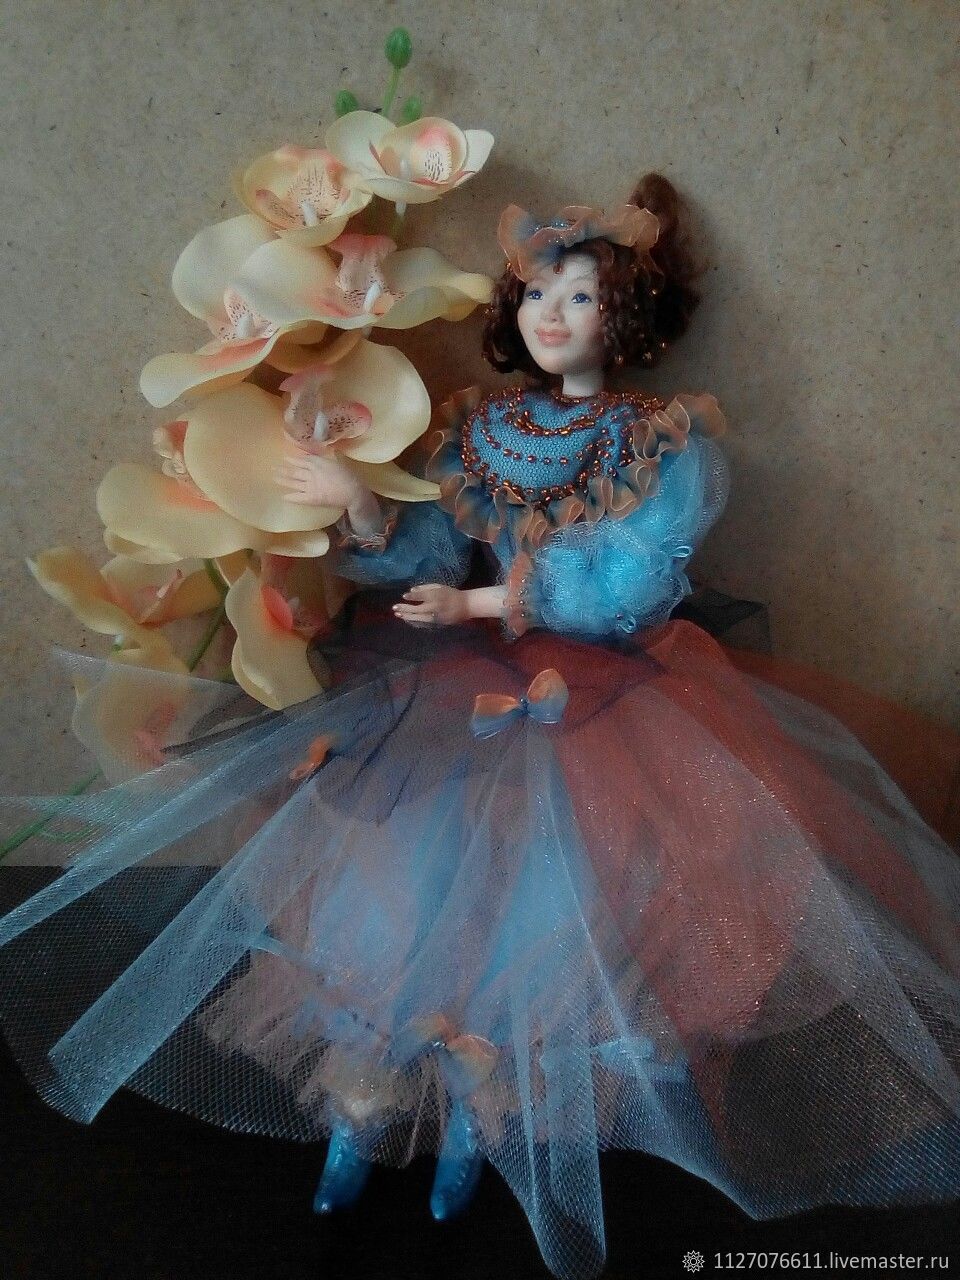 Флора кукла с матрасом